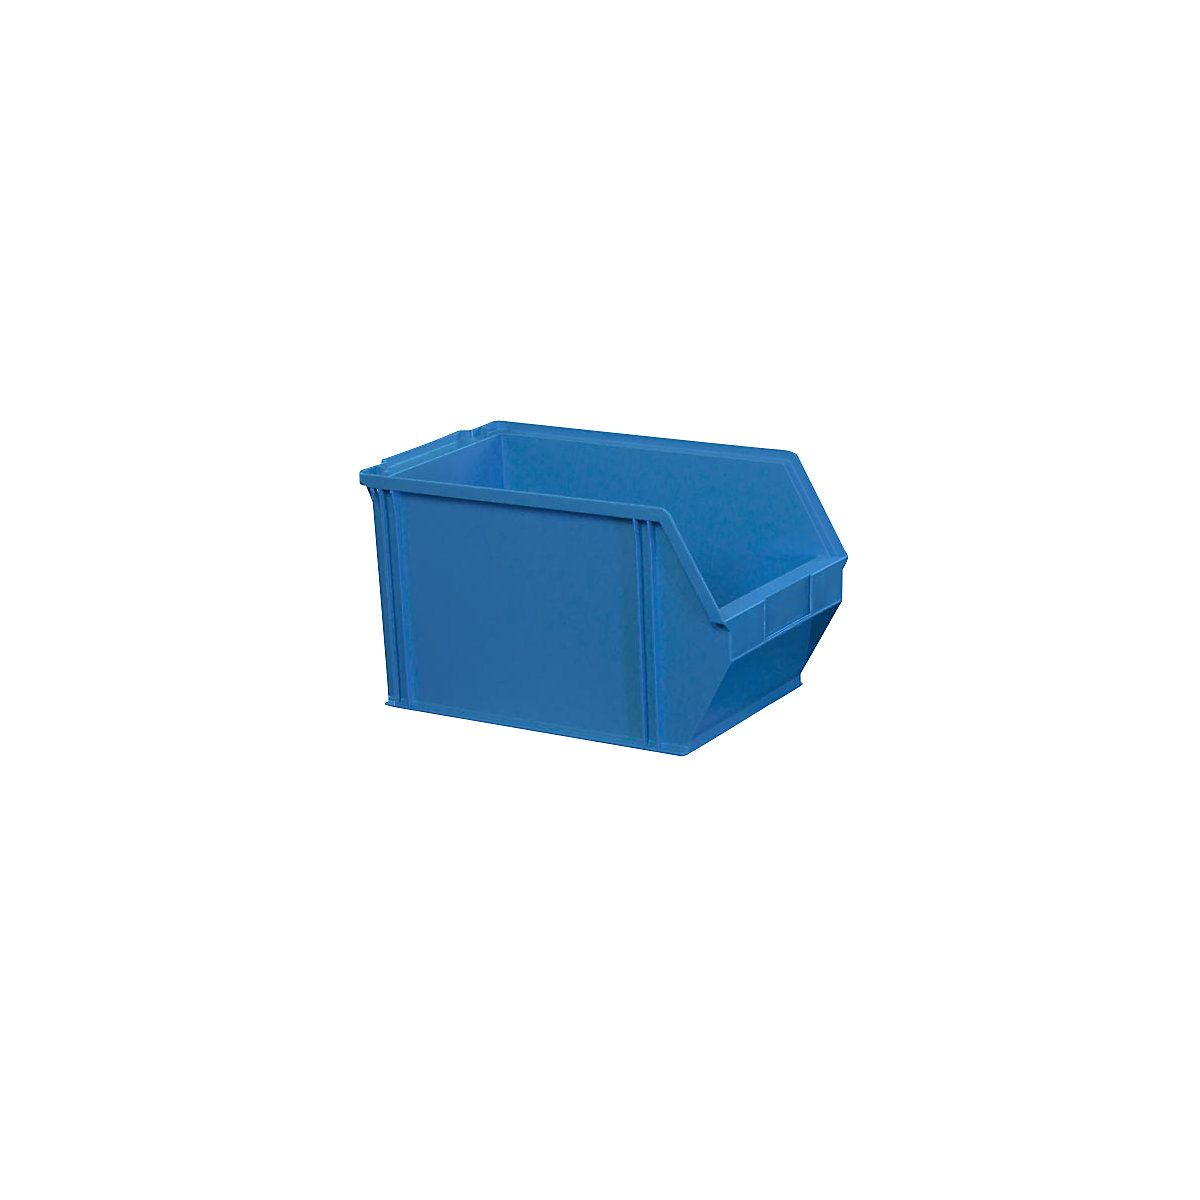 Otvorena skladišna kutija od polistirena, dužina 350 mm, ŠxV 200 x 200 mm, pak. 12 kom., u plavoj boji-10